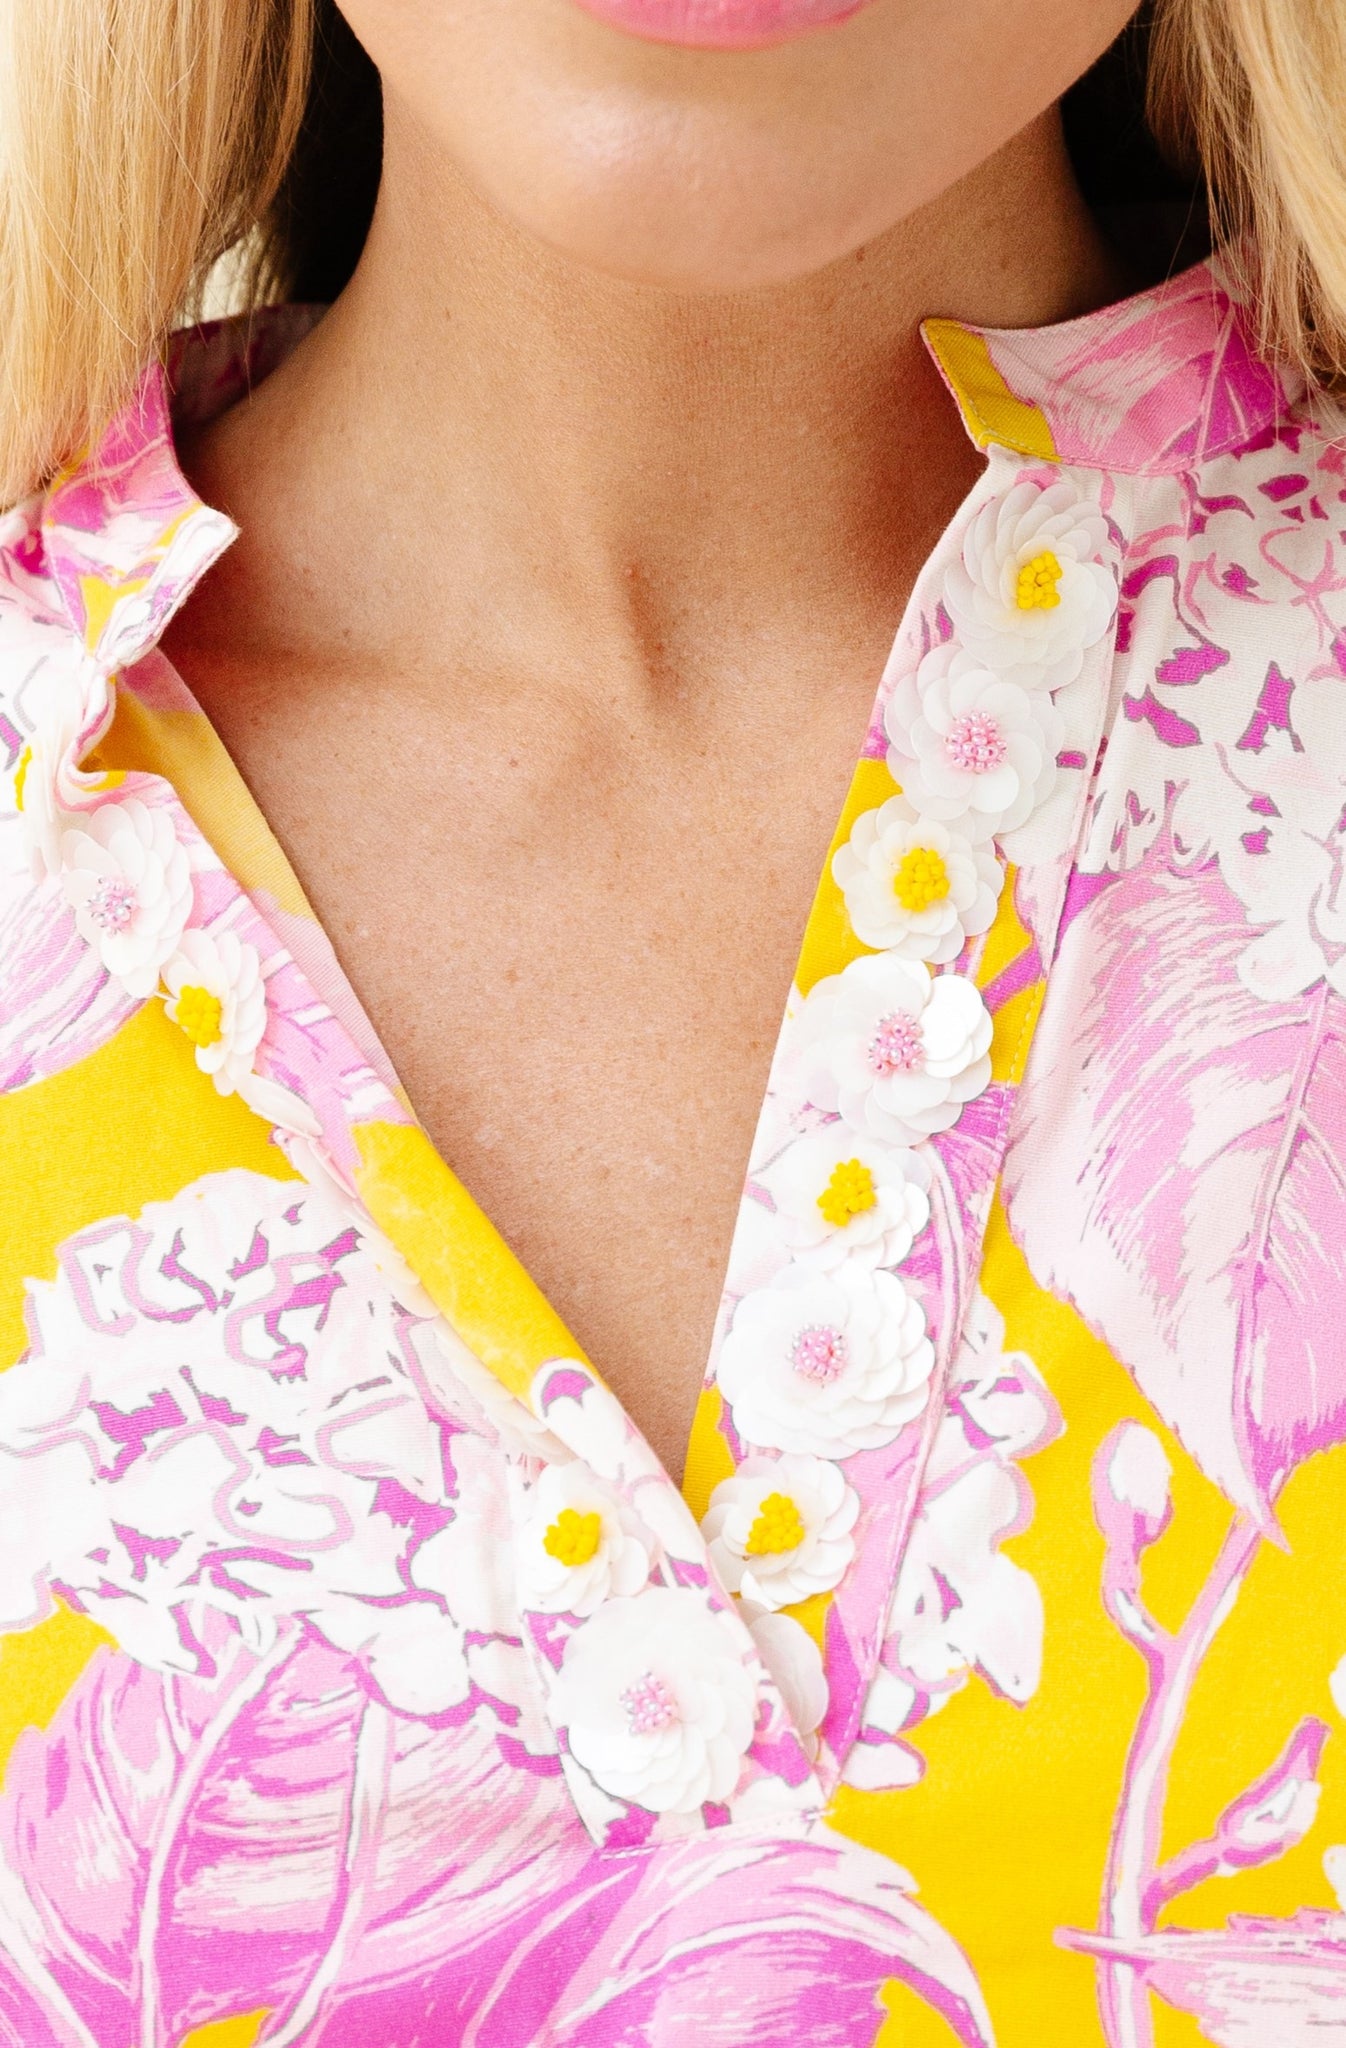 Drew Blouse in Pink Lemonade Hydrangea